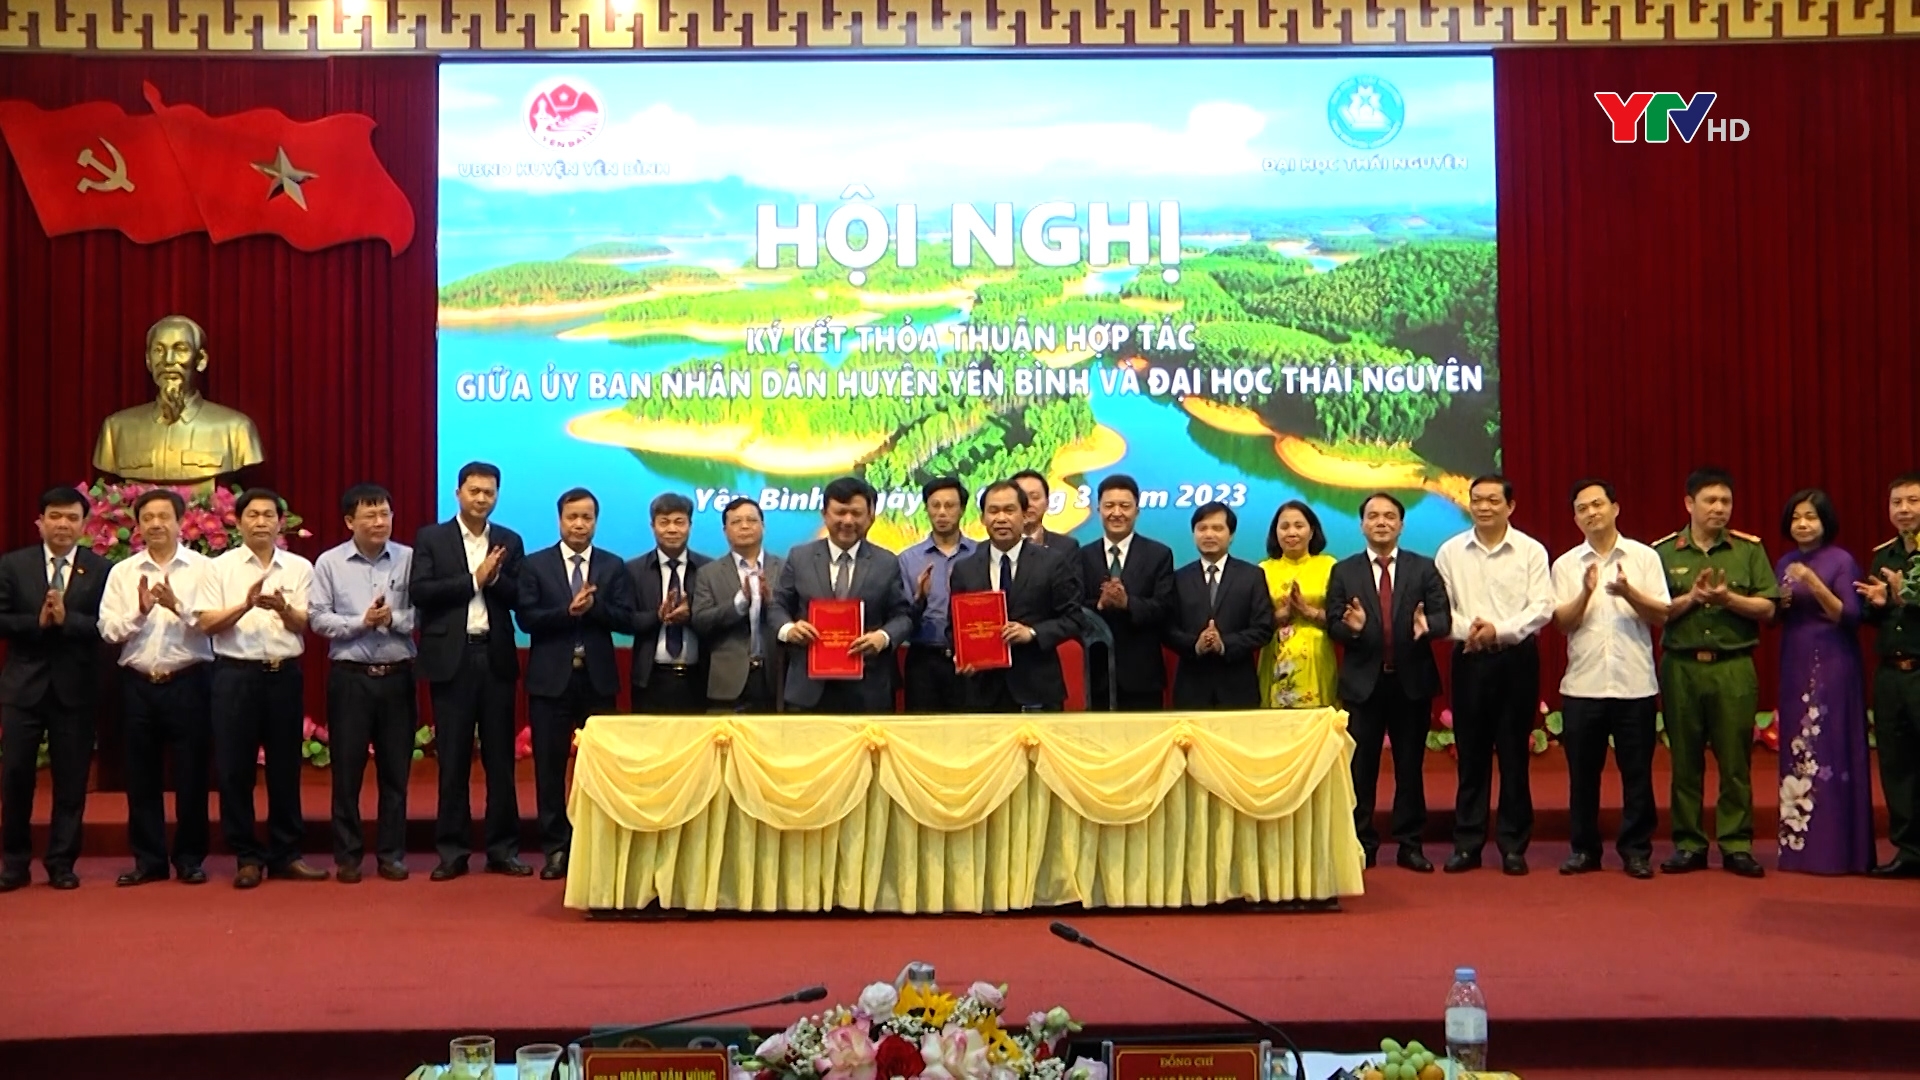 UBND huyện Yên Bình ký kết chương trình hợp tác với Đại học Thái Nguyên